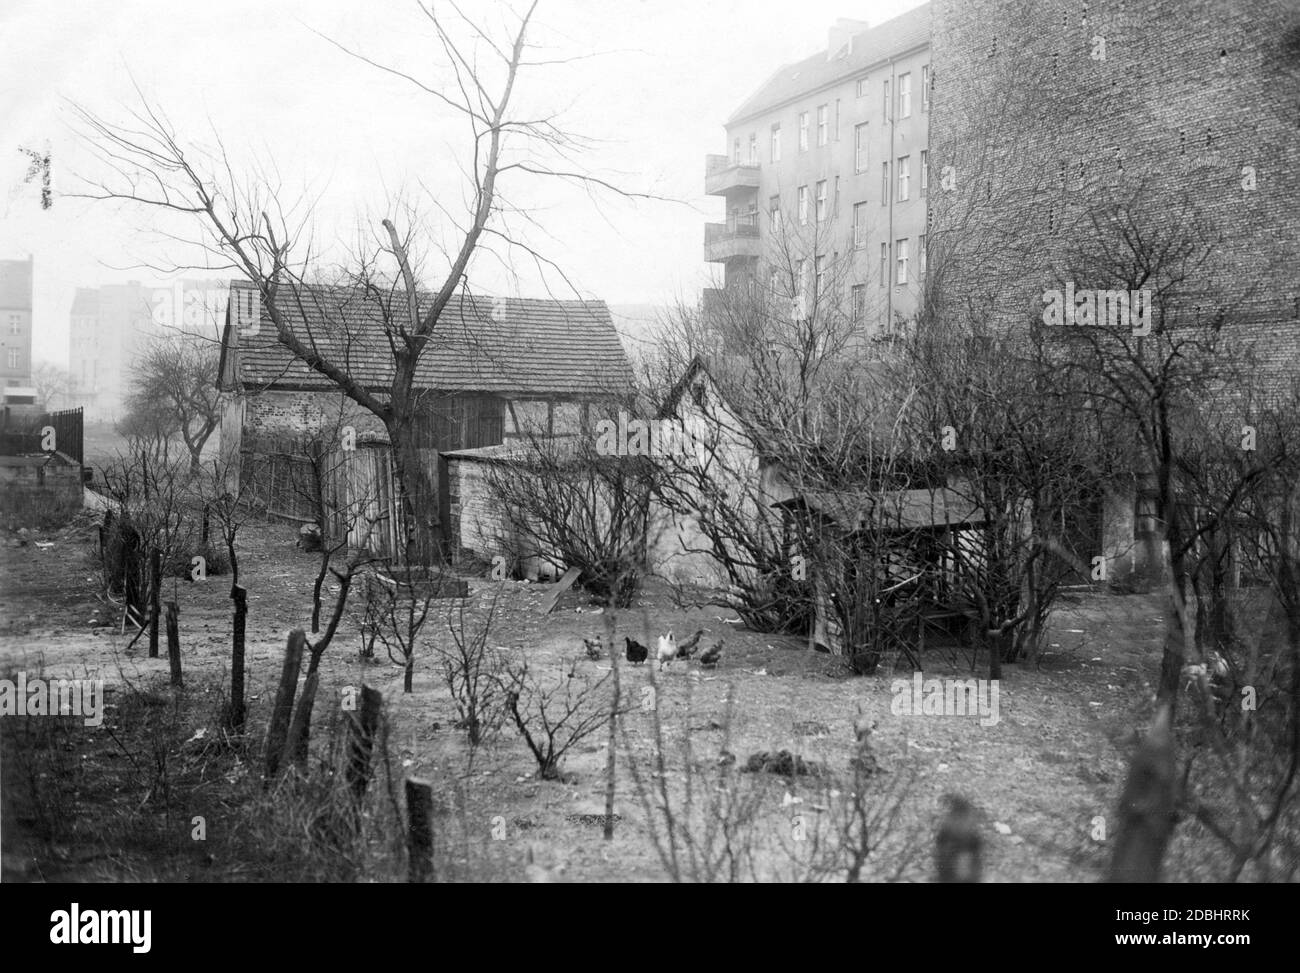 Una vecchia (e una delle ultime) fattoria si trova nel mezzo di blocchi di affittuazione e nuove case a Berlino. I polli sono graffiando nel cortile. La foto è stata scattata a Berlino-Wilmersdorf tra Kurfuerstendamm, Brandenburgische Strasse e Ravensbergerstrasse nel 1931. Foto Stock